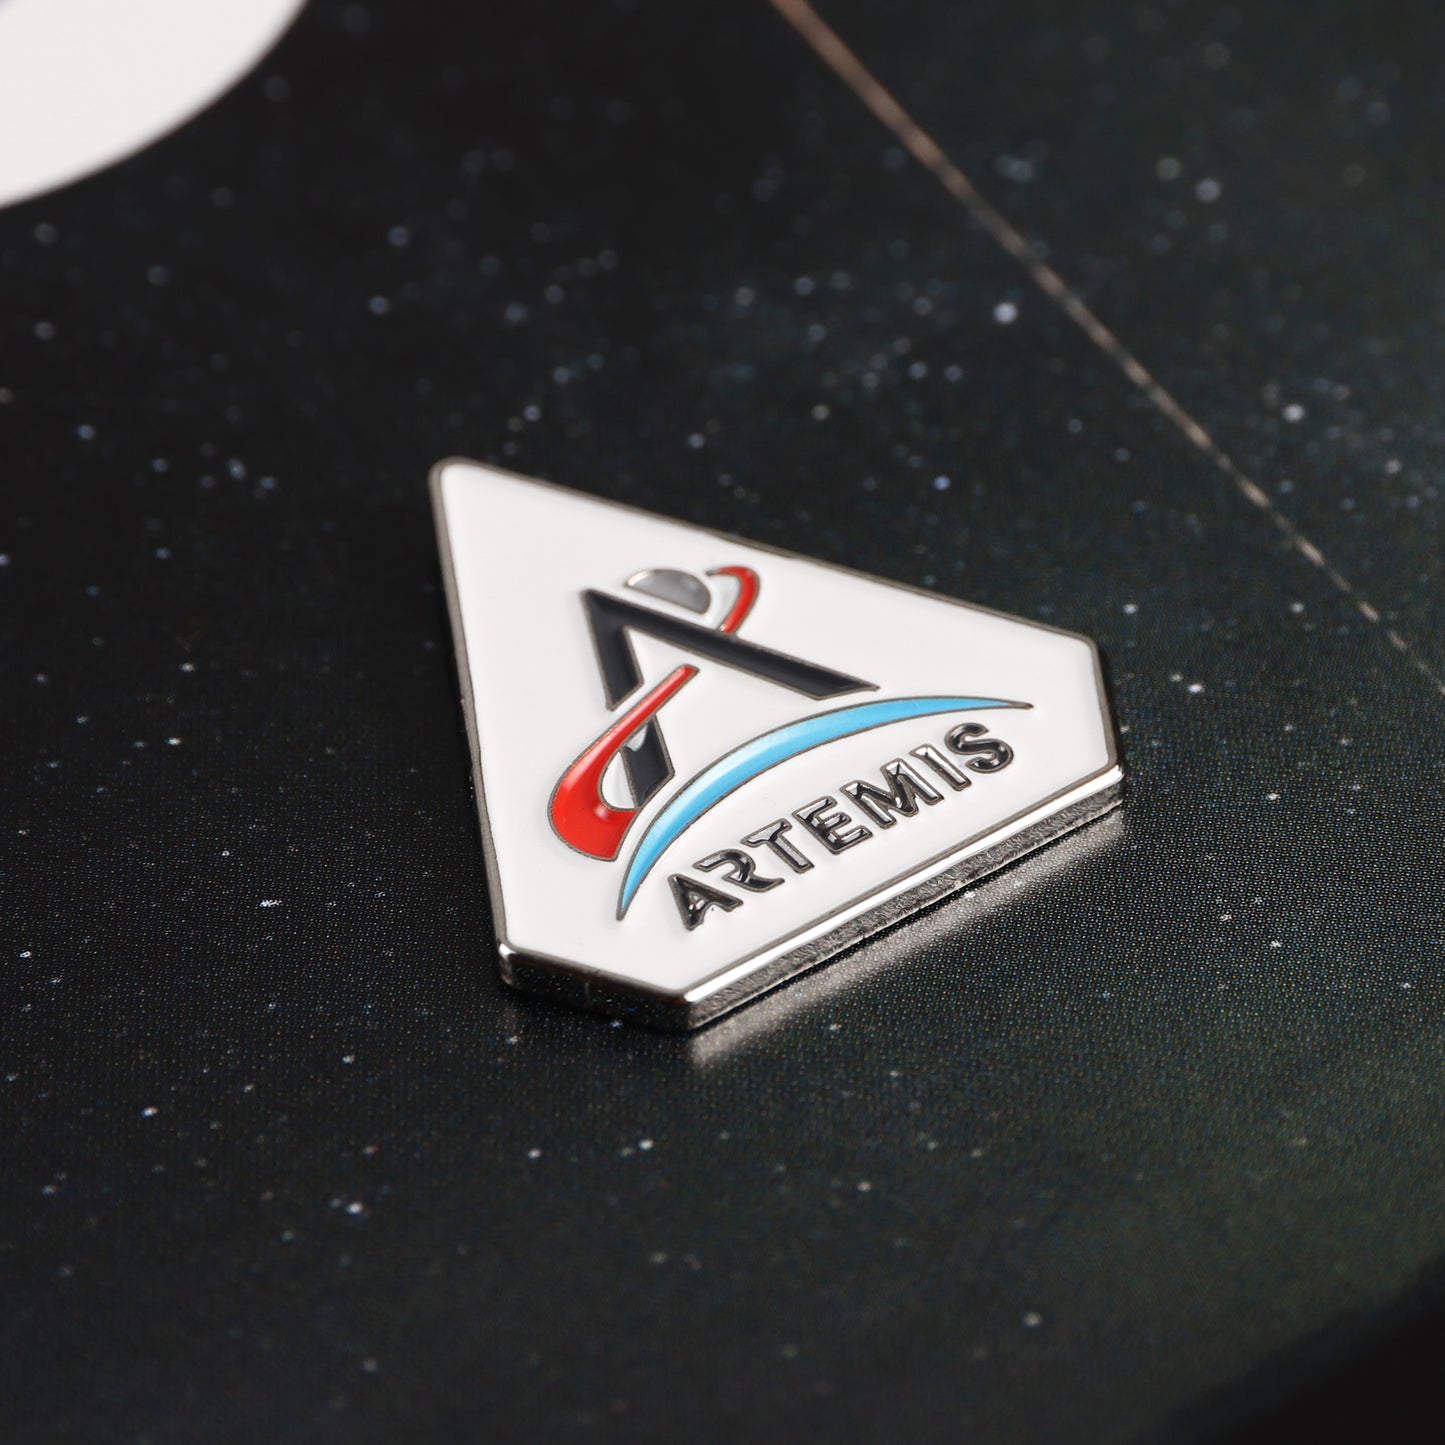 NASA Artemis Pin Badge